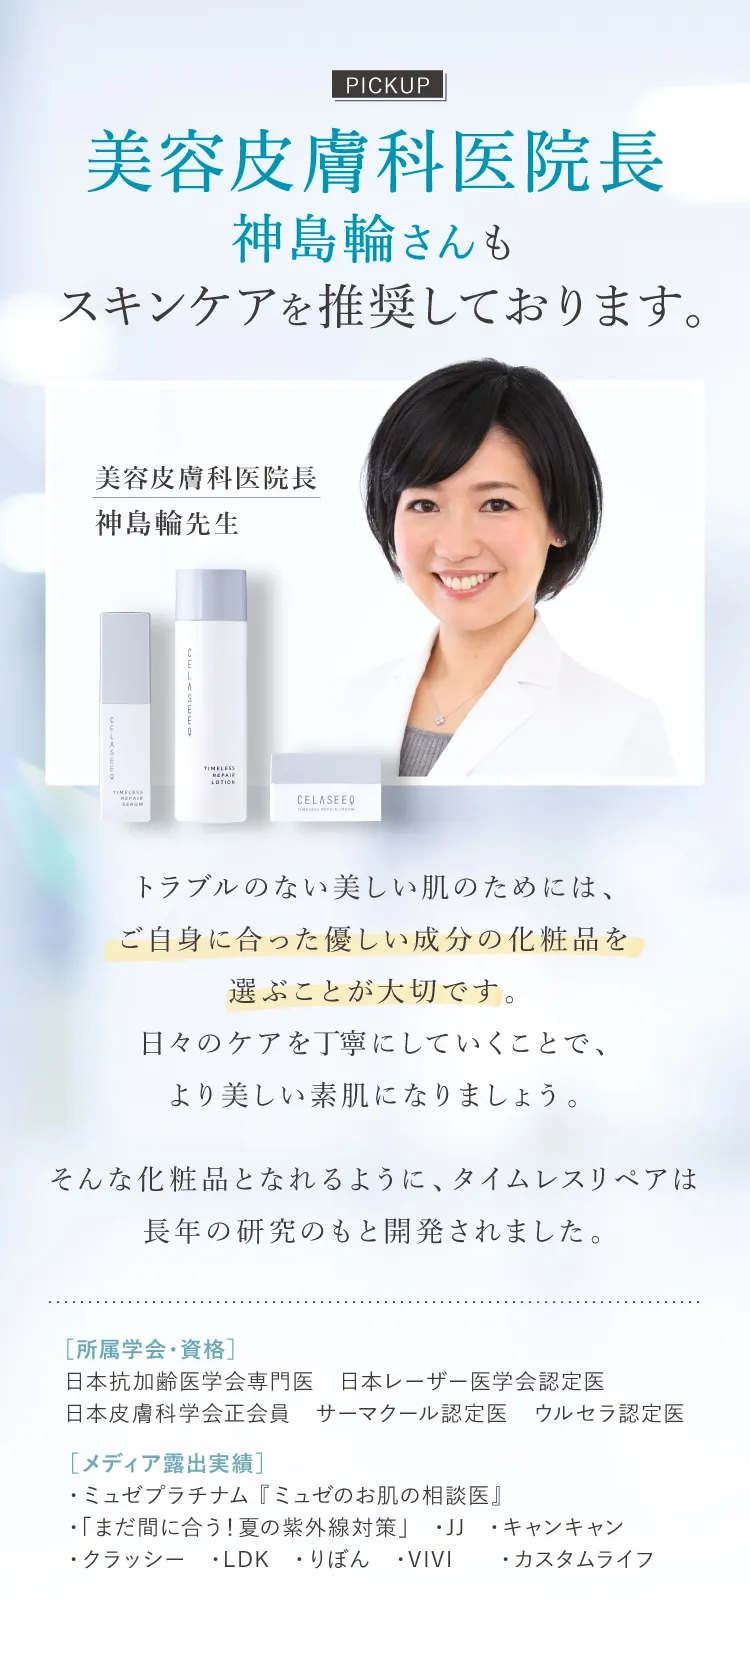 美容皮膚科医院長 神島輪さんもスキンケアを推奨しております。